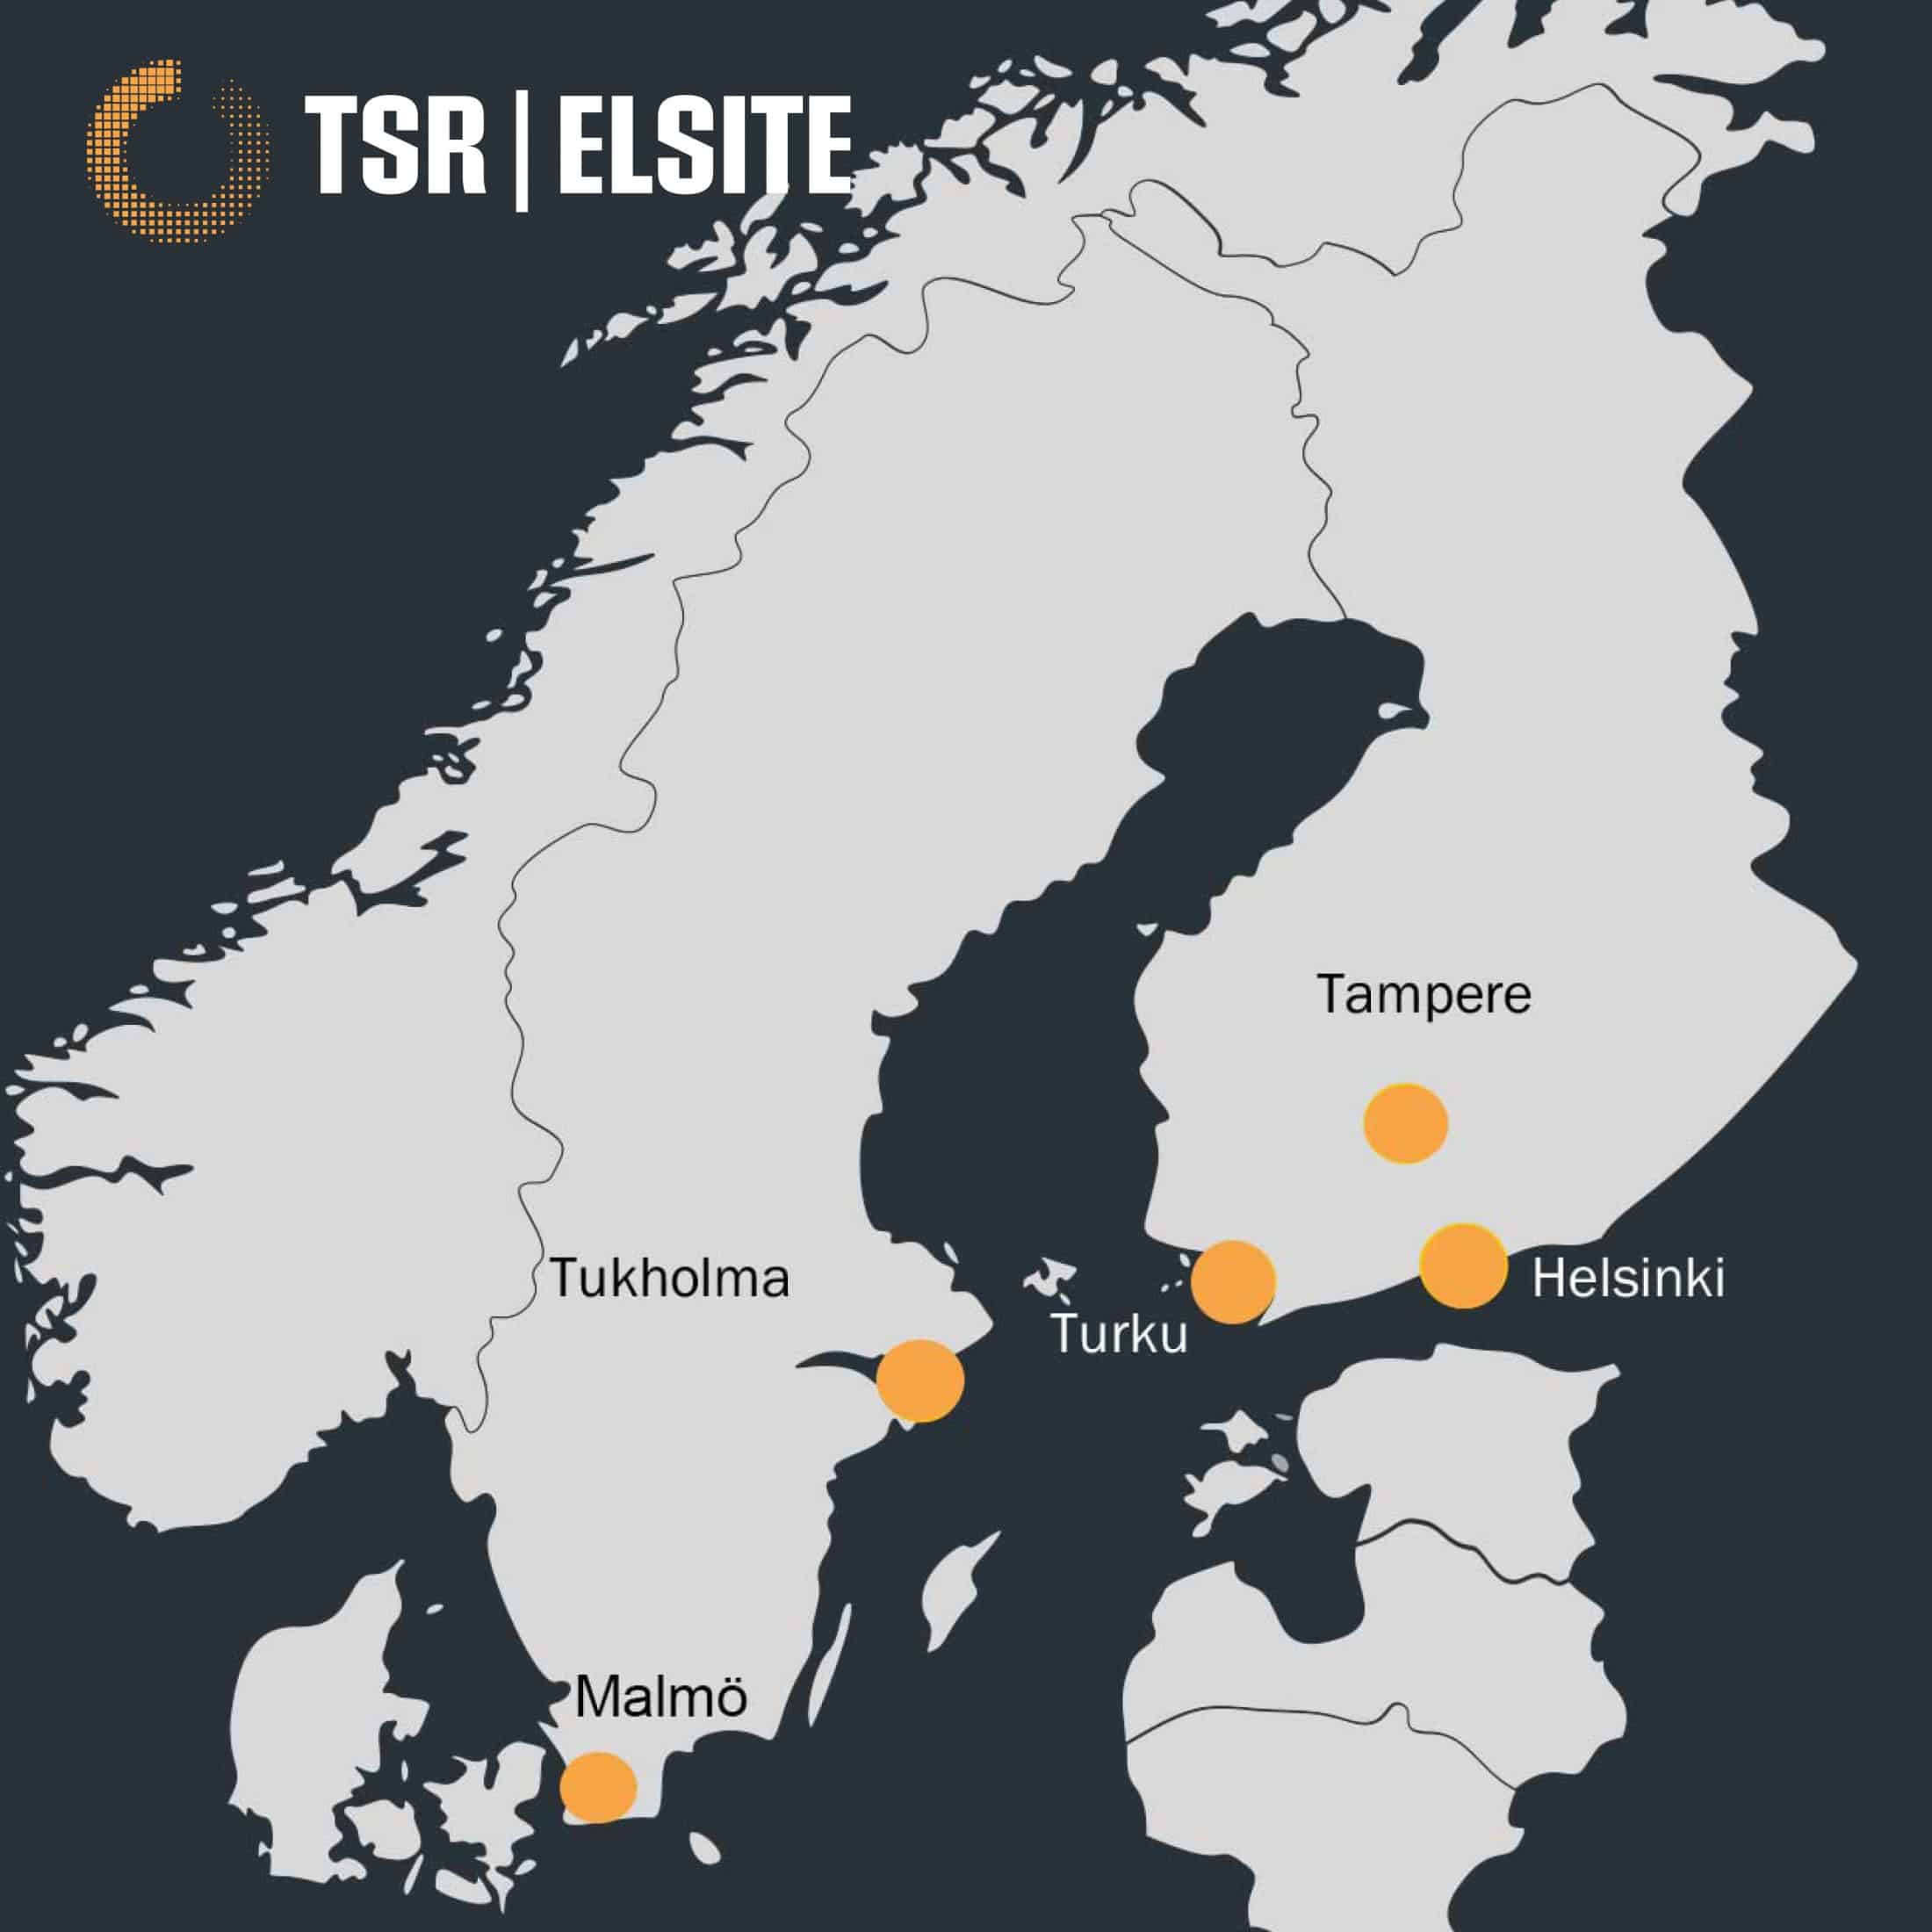 TSR-ELSITE Group is growing in Sweden - TSR|ELSITE